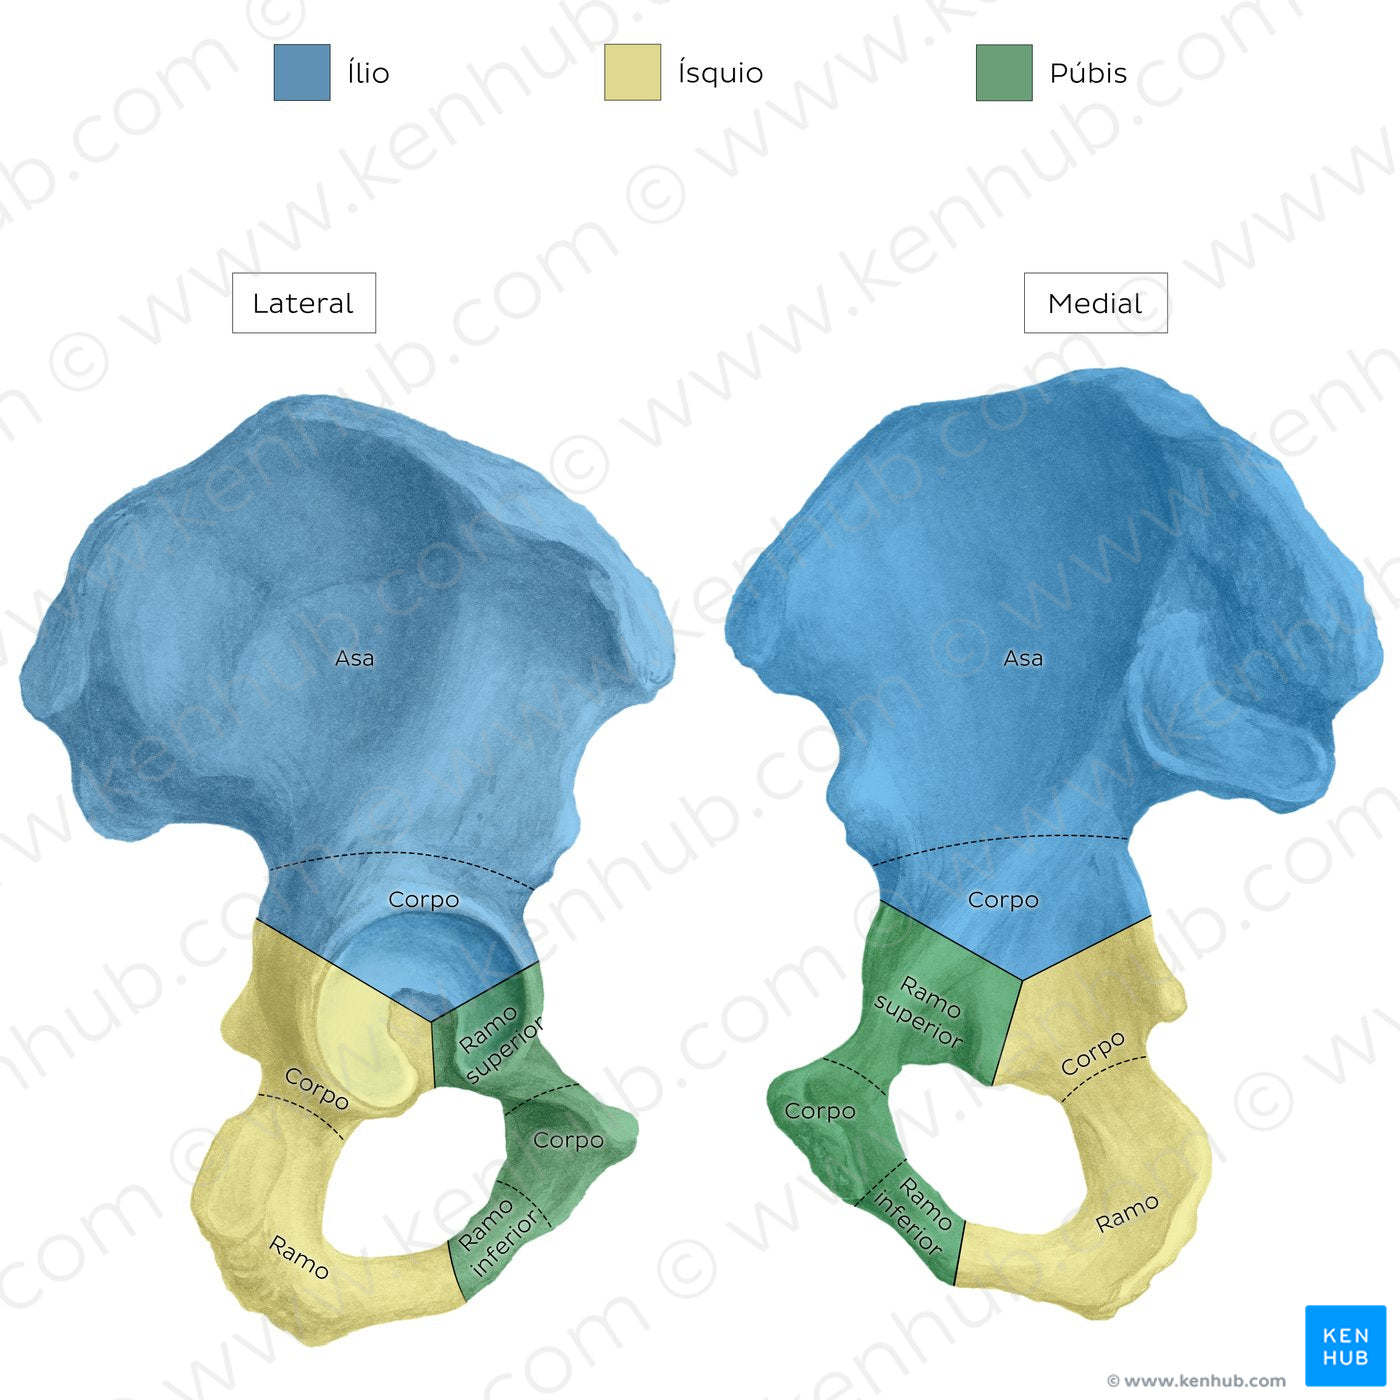 Hip bone (parts) (Portuguese)